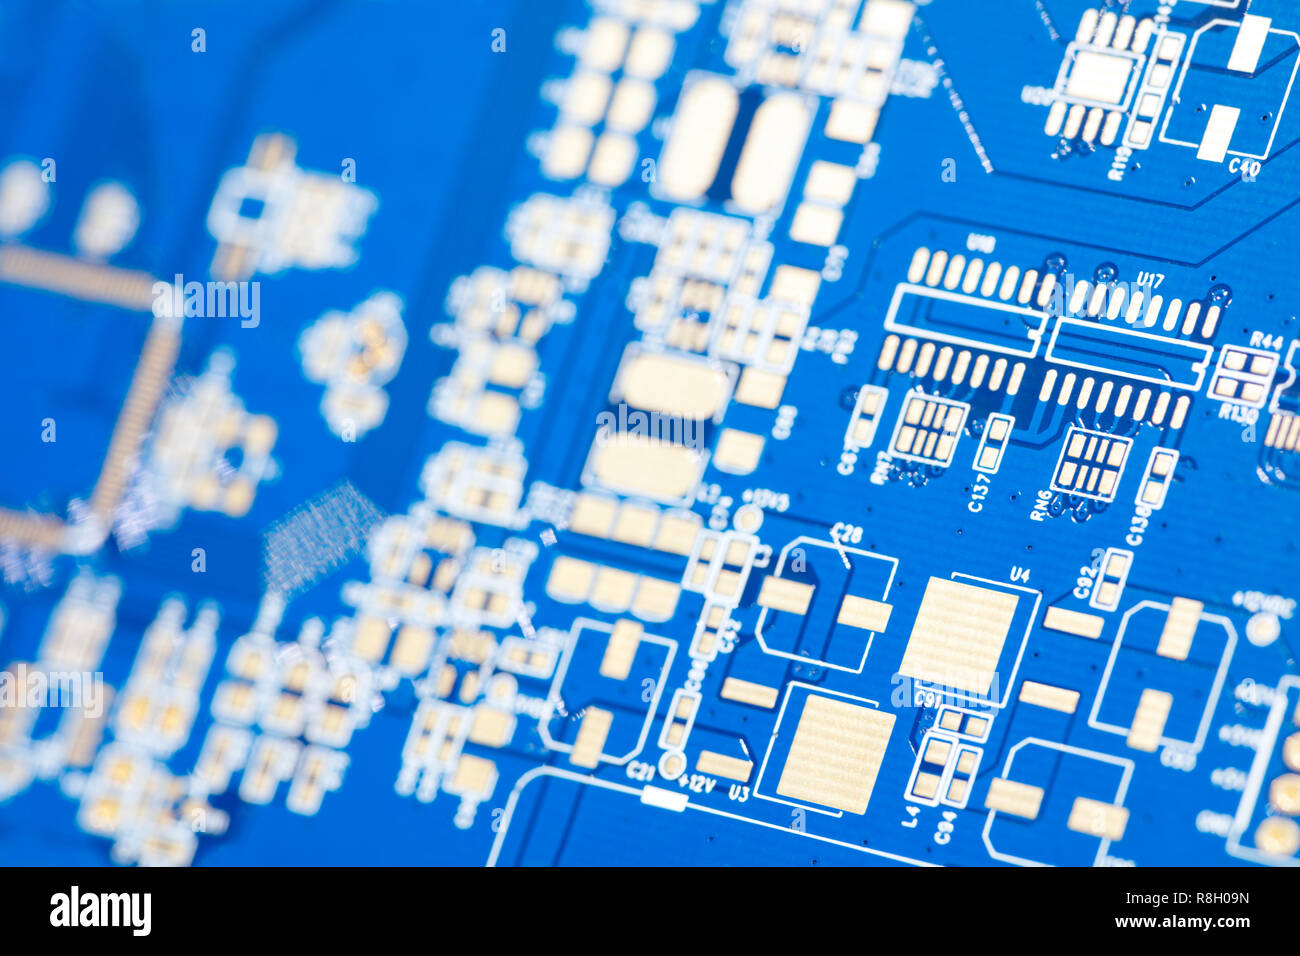 Stromkreis Blue Board. Electronic computer hardware Technologie. Motherboard digital Chip. Tech Wissenschaft Hintergrund. Integrierte Kommunikation Prozessor. In Stockfoto